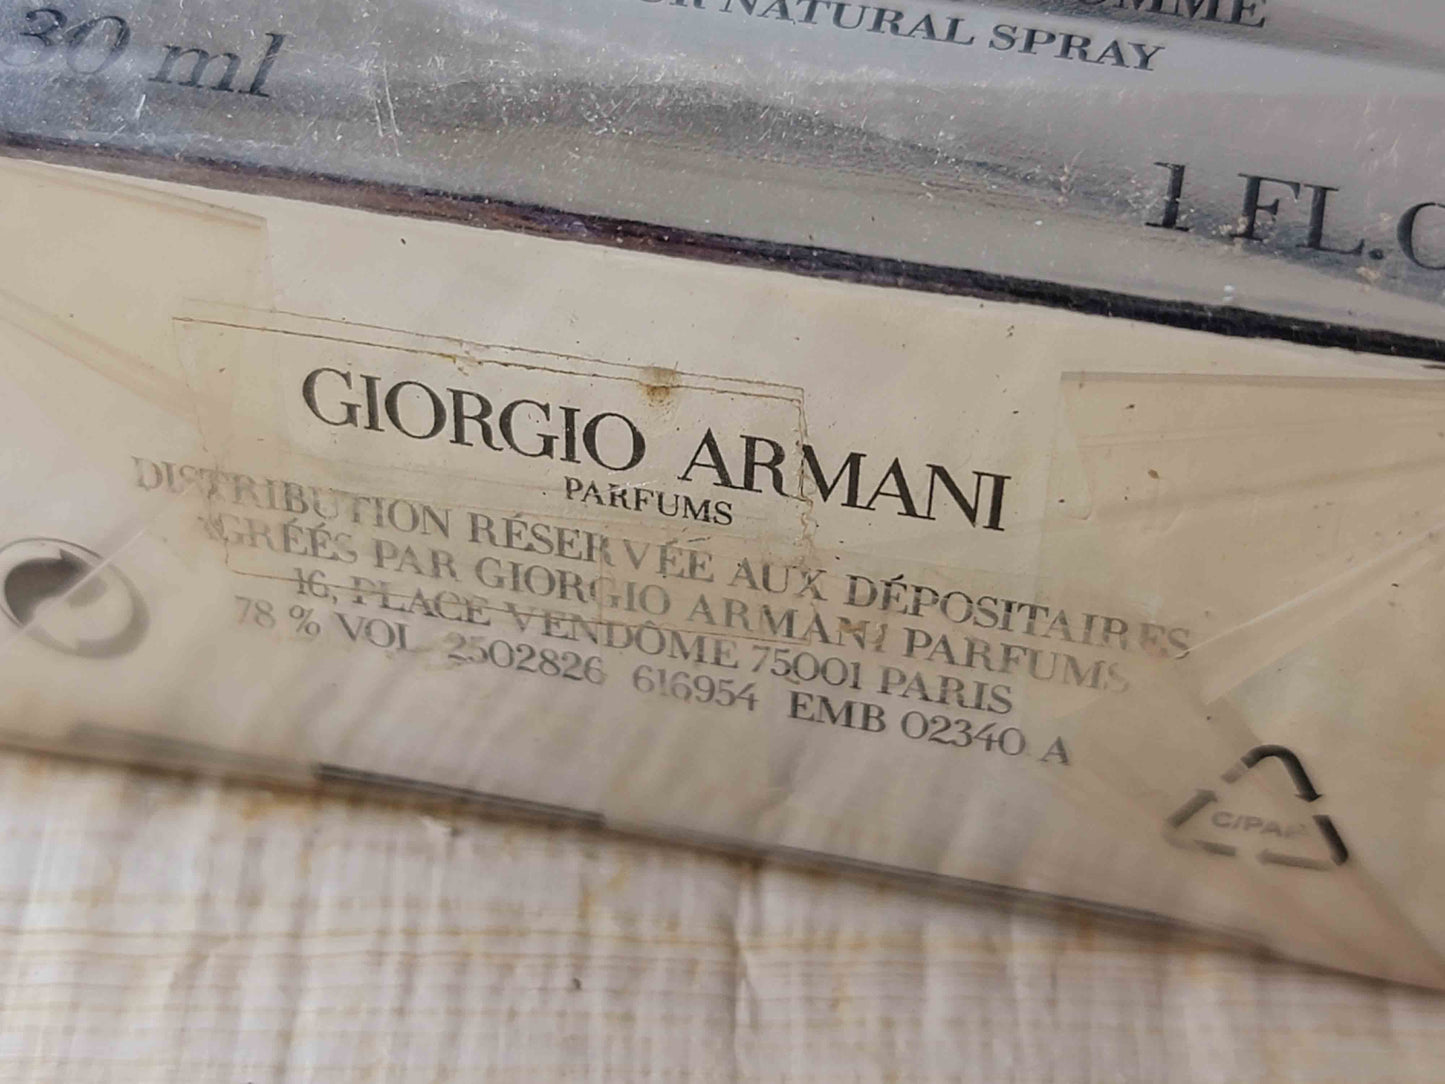 Giorgio Armani Attitude for Men EDT Spray 75 ml 2.5 oz Or 50 ml 1.7 oz OR 30 ml 1 oz, Vintage, Rare